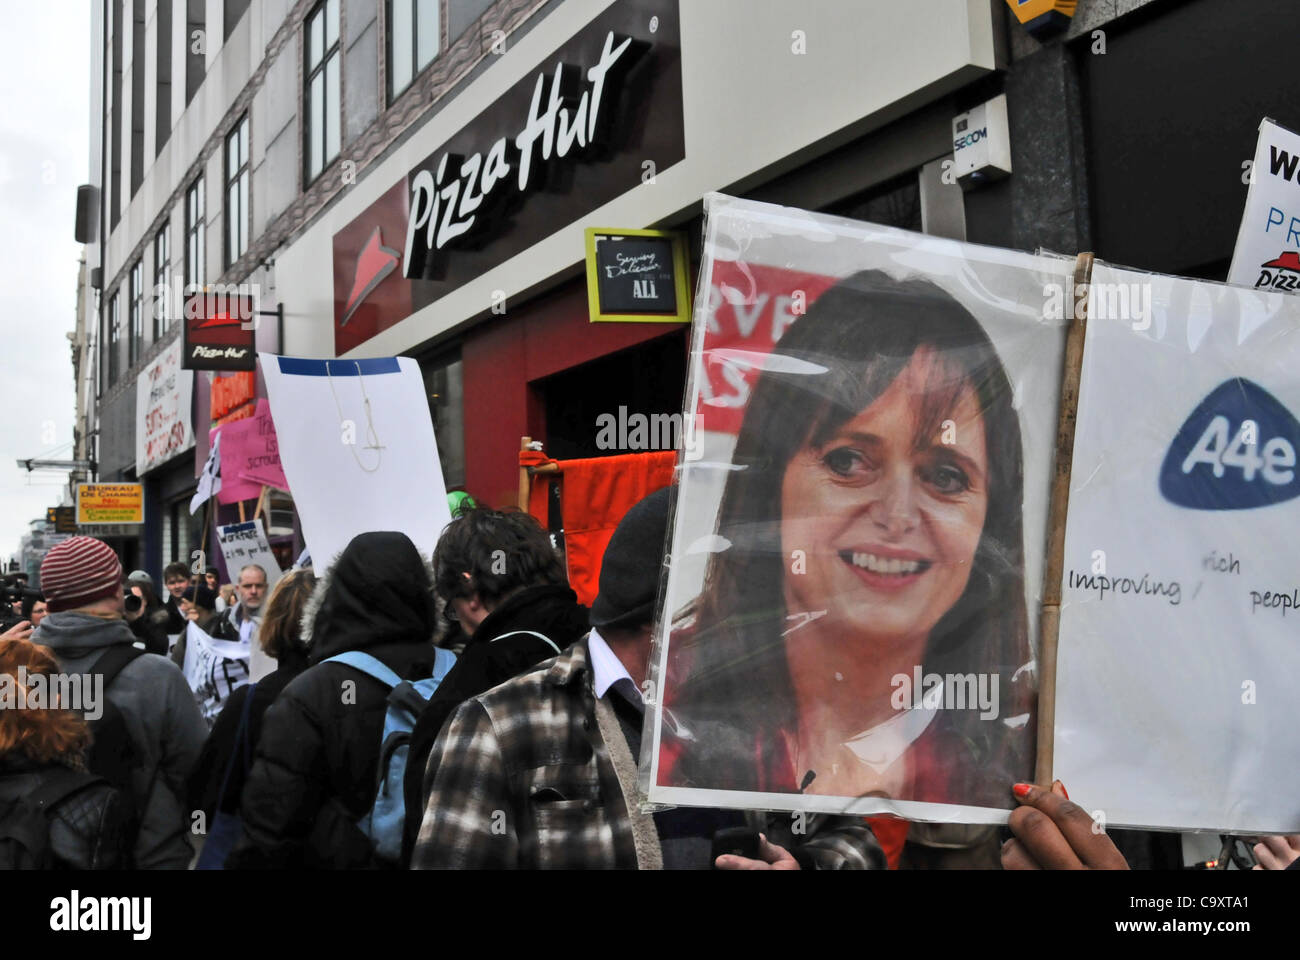 Londra, Regno Unito. Mar 03, 2012. Anti workfare manifestanti su Oxford Street nel centro di Londra, che protestano contro il governo workfare programma. Foto Stock